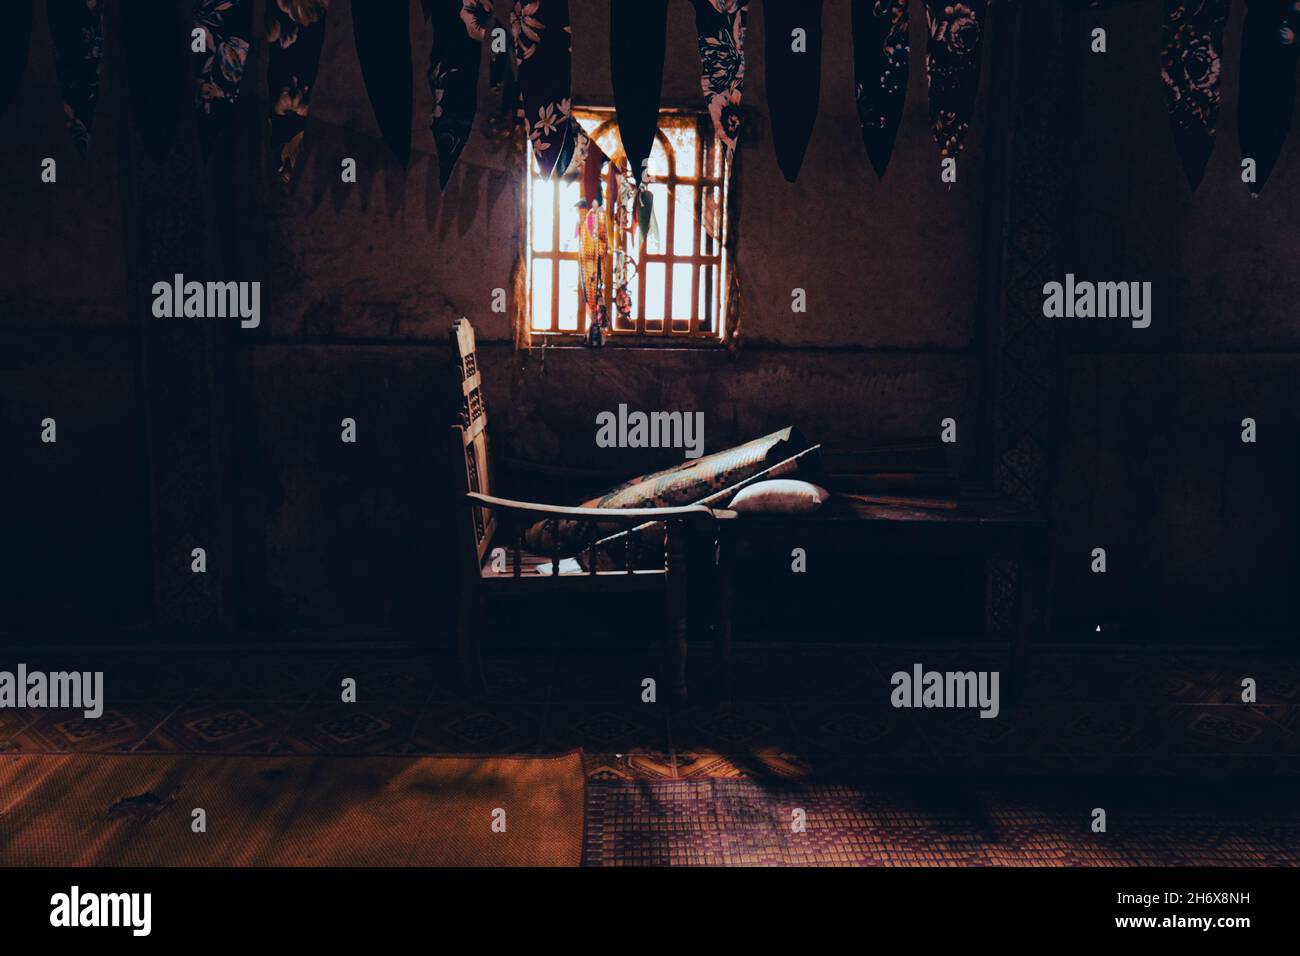 Gruselige Landschaft eines Stuhls in einem dunklen verlassenen Ort, Halloween-Thema Hintergrund Stockfoto